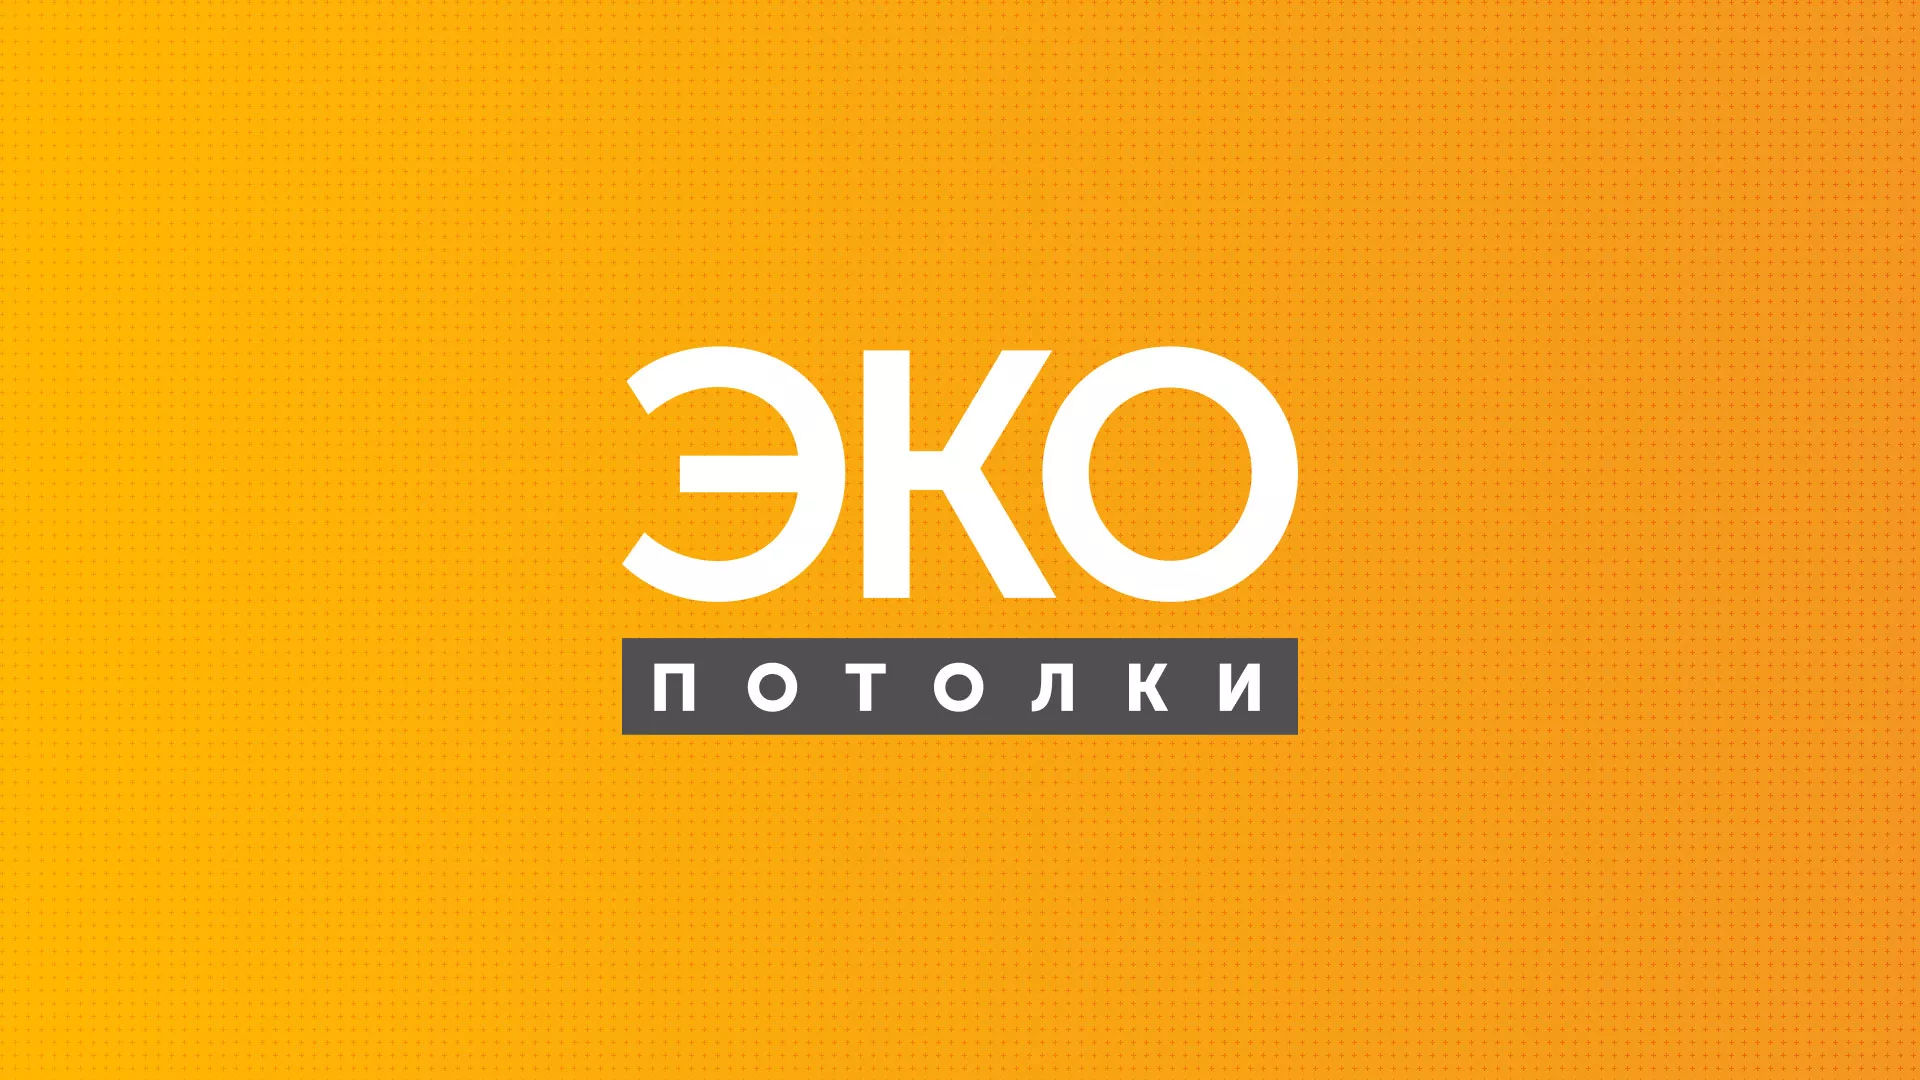 Разработка сайта по натяжным потолкам «Эко Потолки» в Челябинске